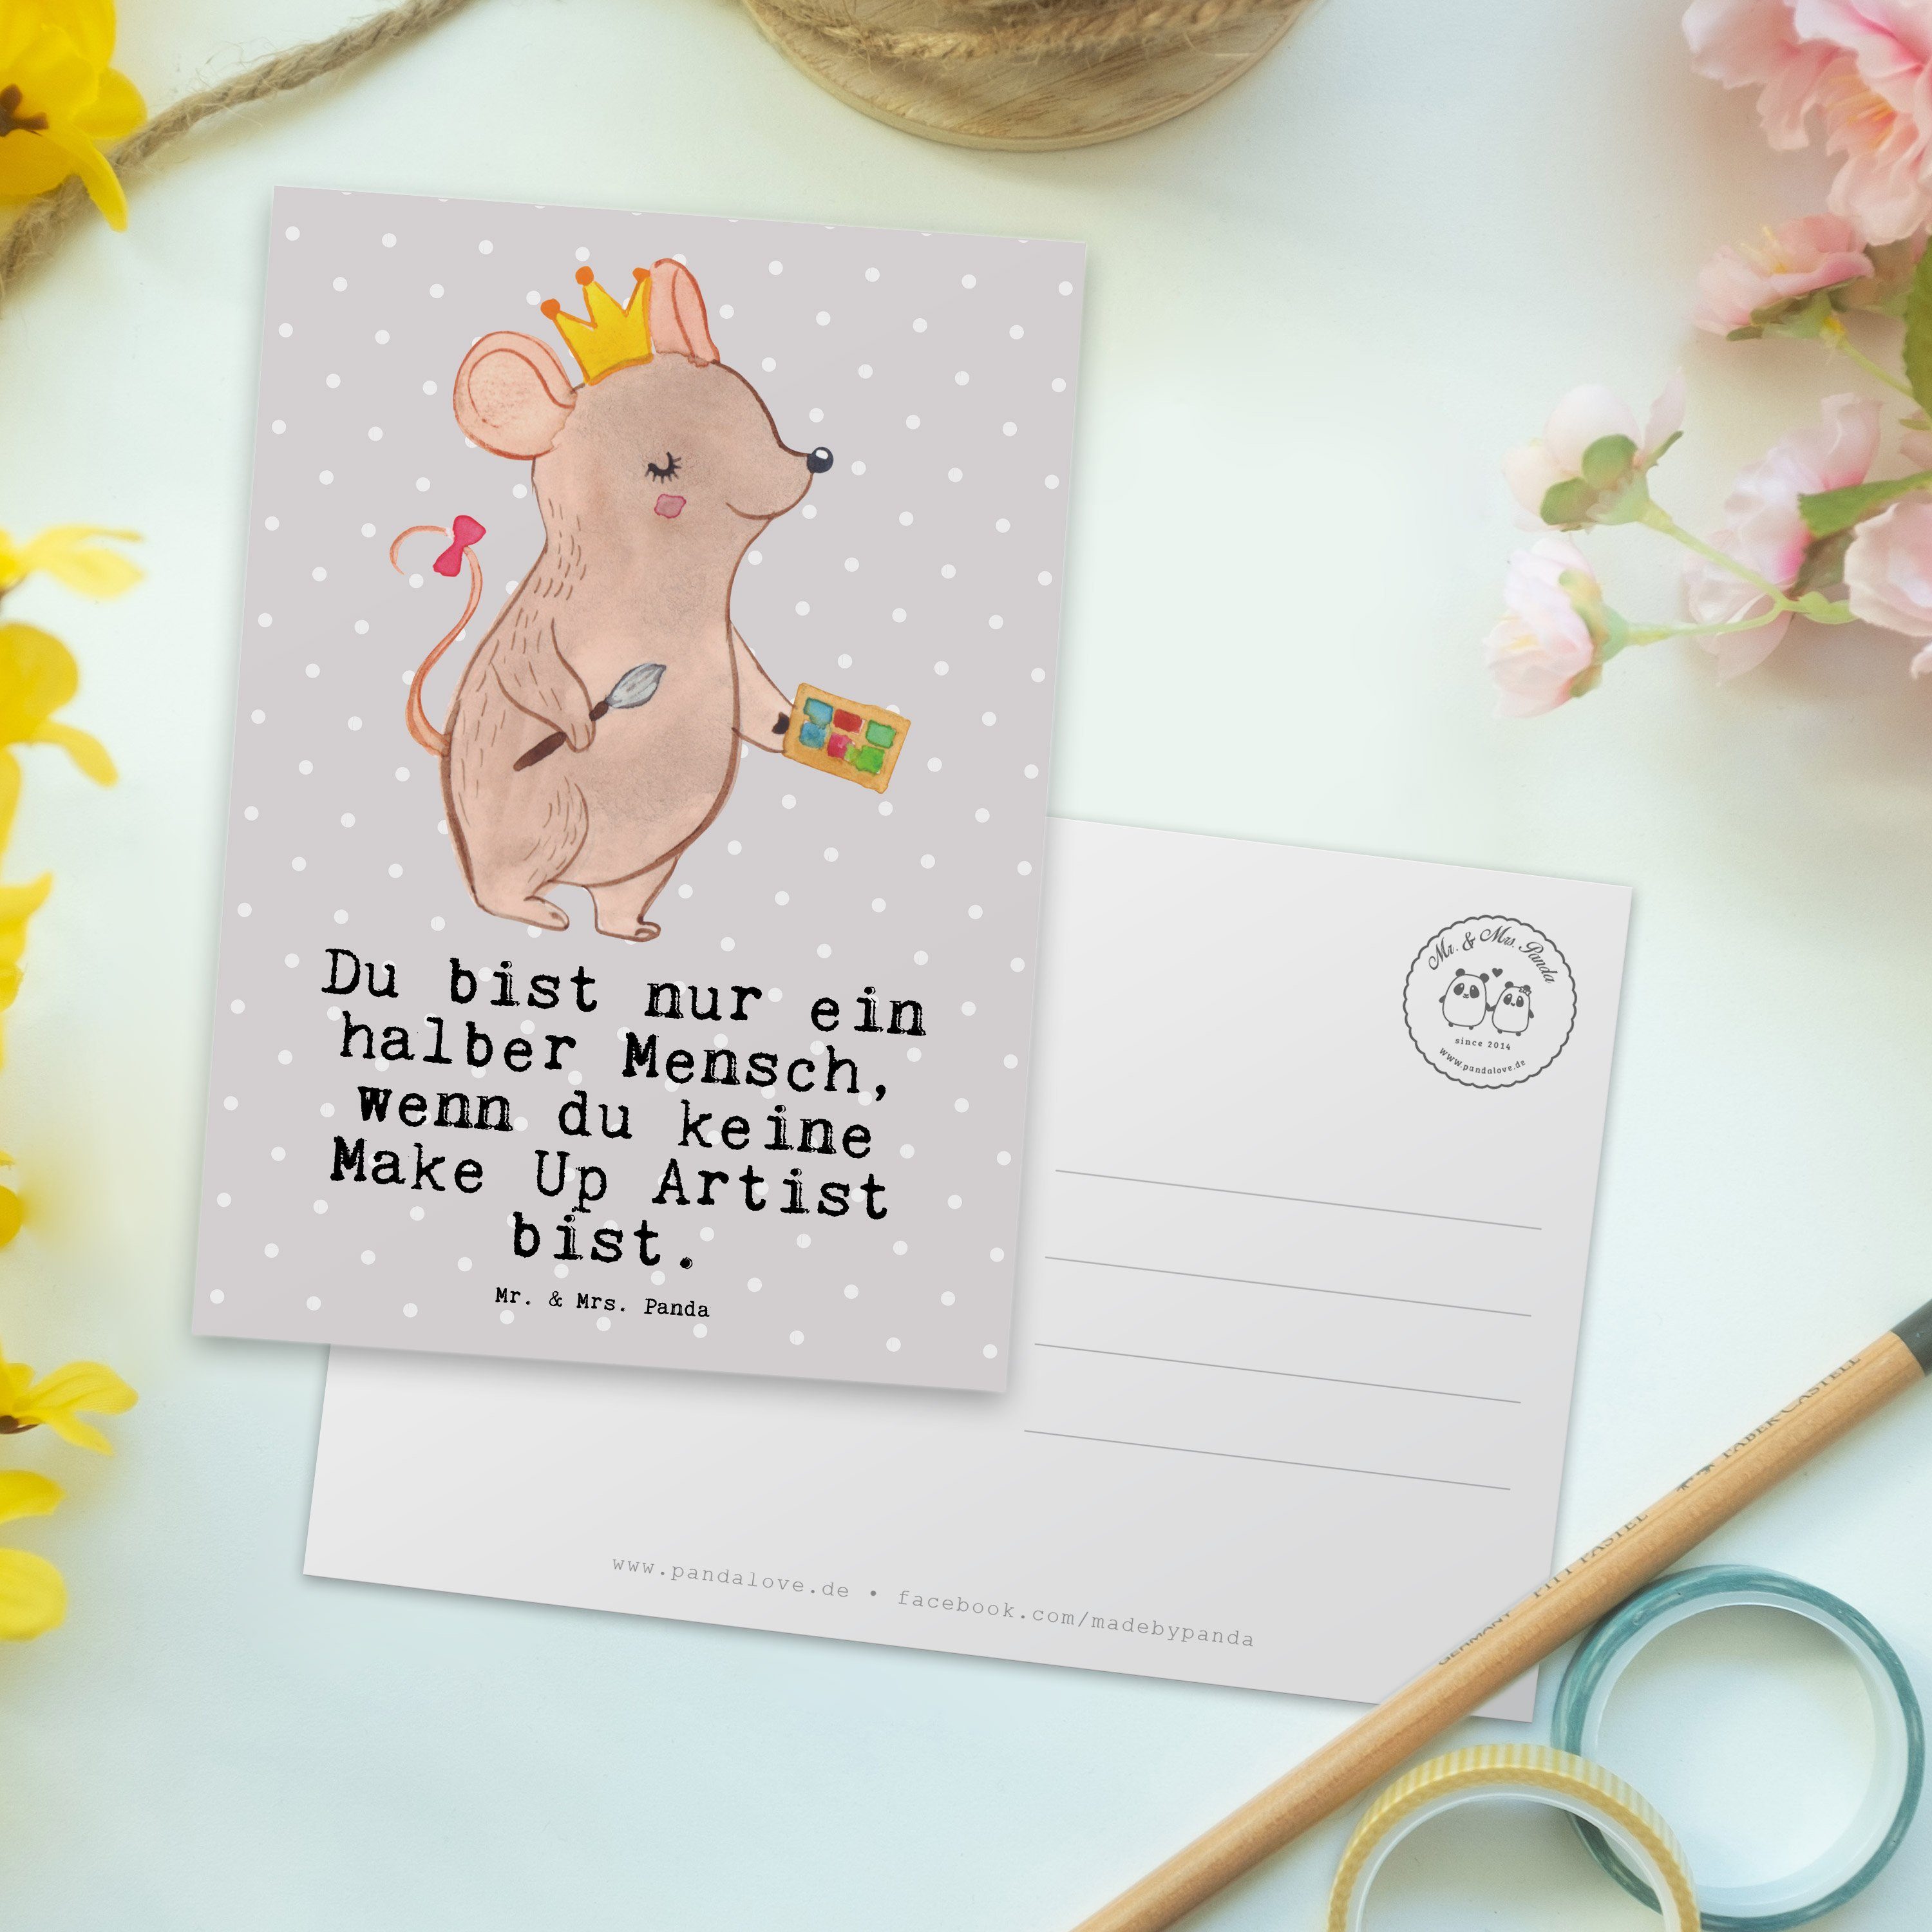 Mr. & Mrs. Panda Herz mit Geschenk, Make Grau Pastell Artist Karte - - Up Einladung, Postkarte